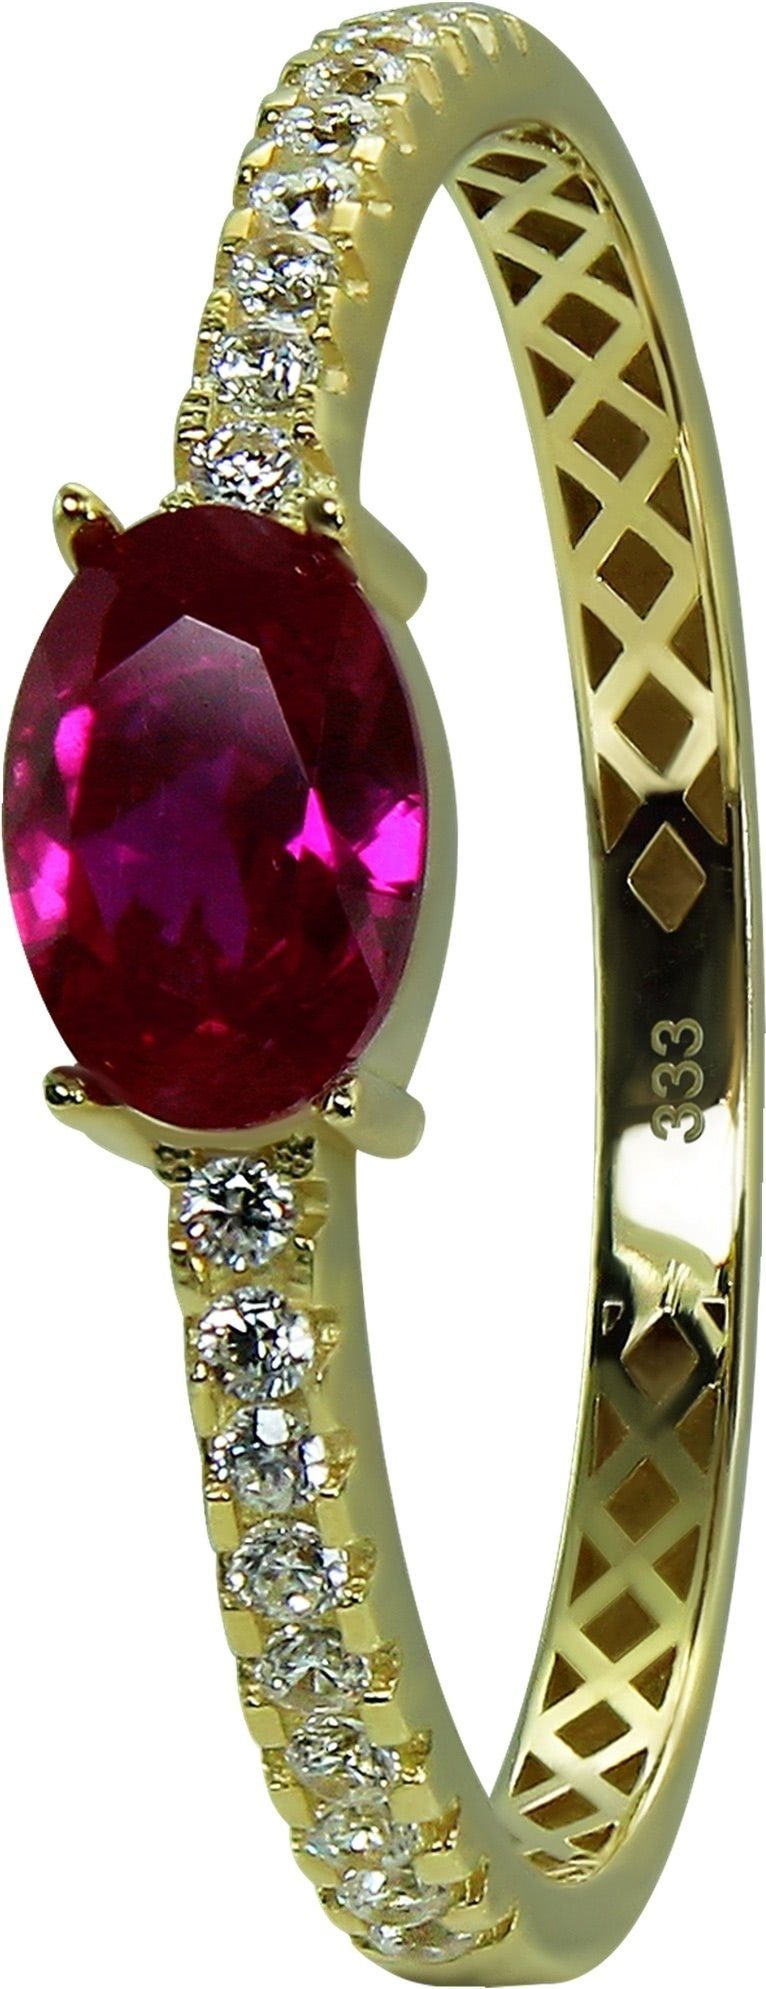 Beauty Ring Damen GoldDream - (Fingerring), Gelbgold Karat, pink Beauty 333 gold, 8 Farbe: GoldDream Gold weiß, Goldring Gr.54 Ring